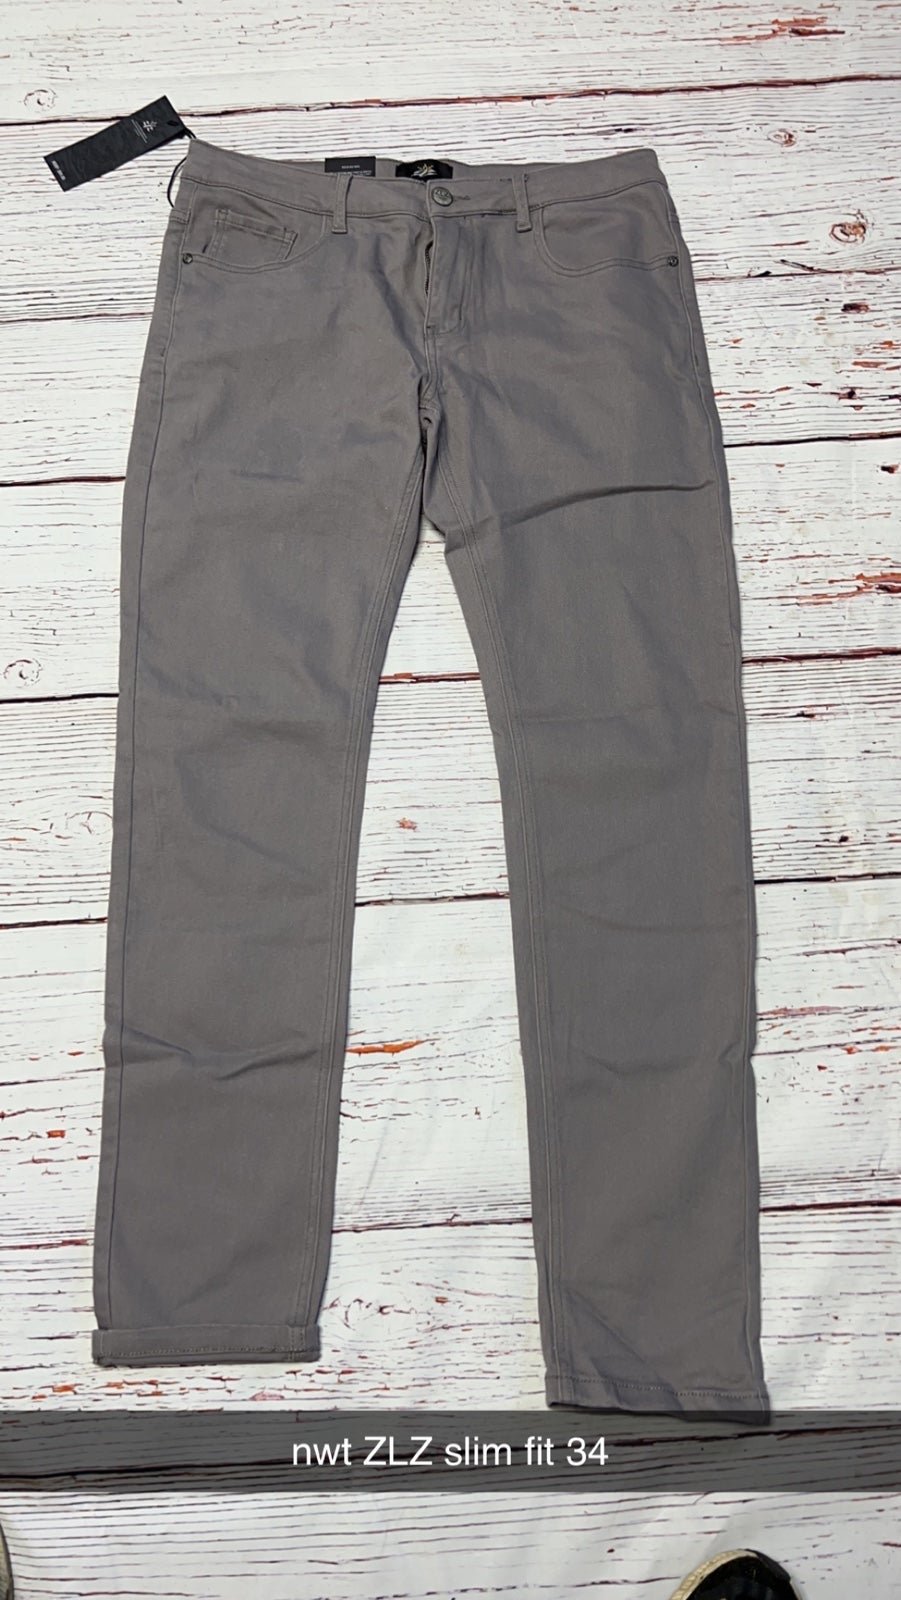 Gorgeous NWT Slim Fit Stretch Comfy Fashion Denim Jeans Pants gjRKWVQJP Online Shop